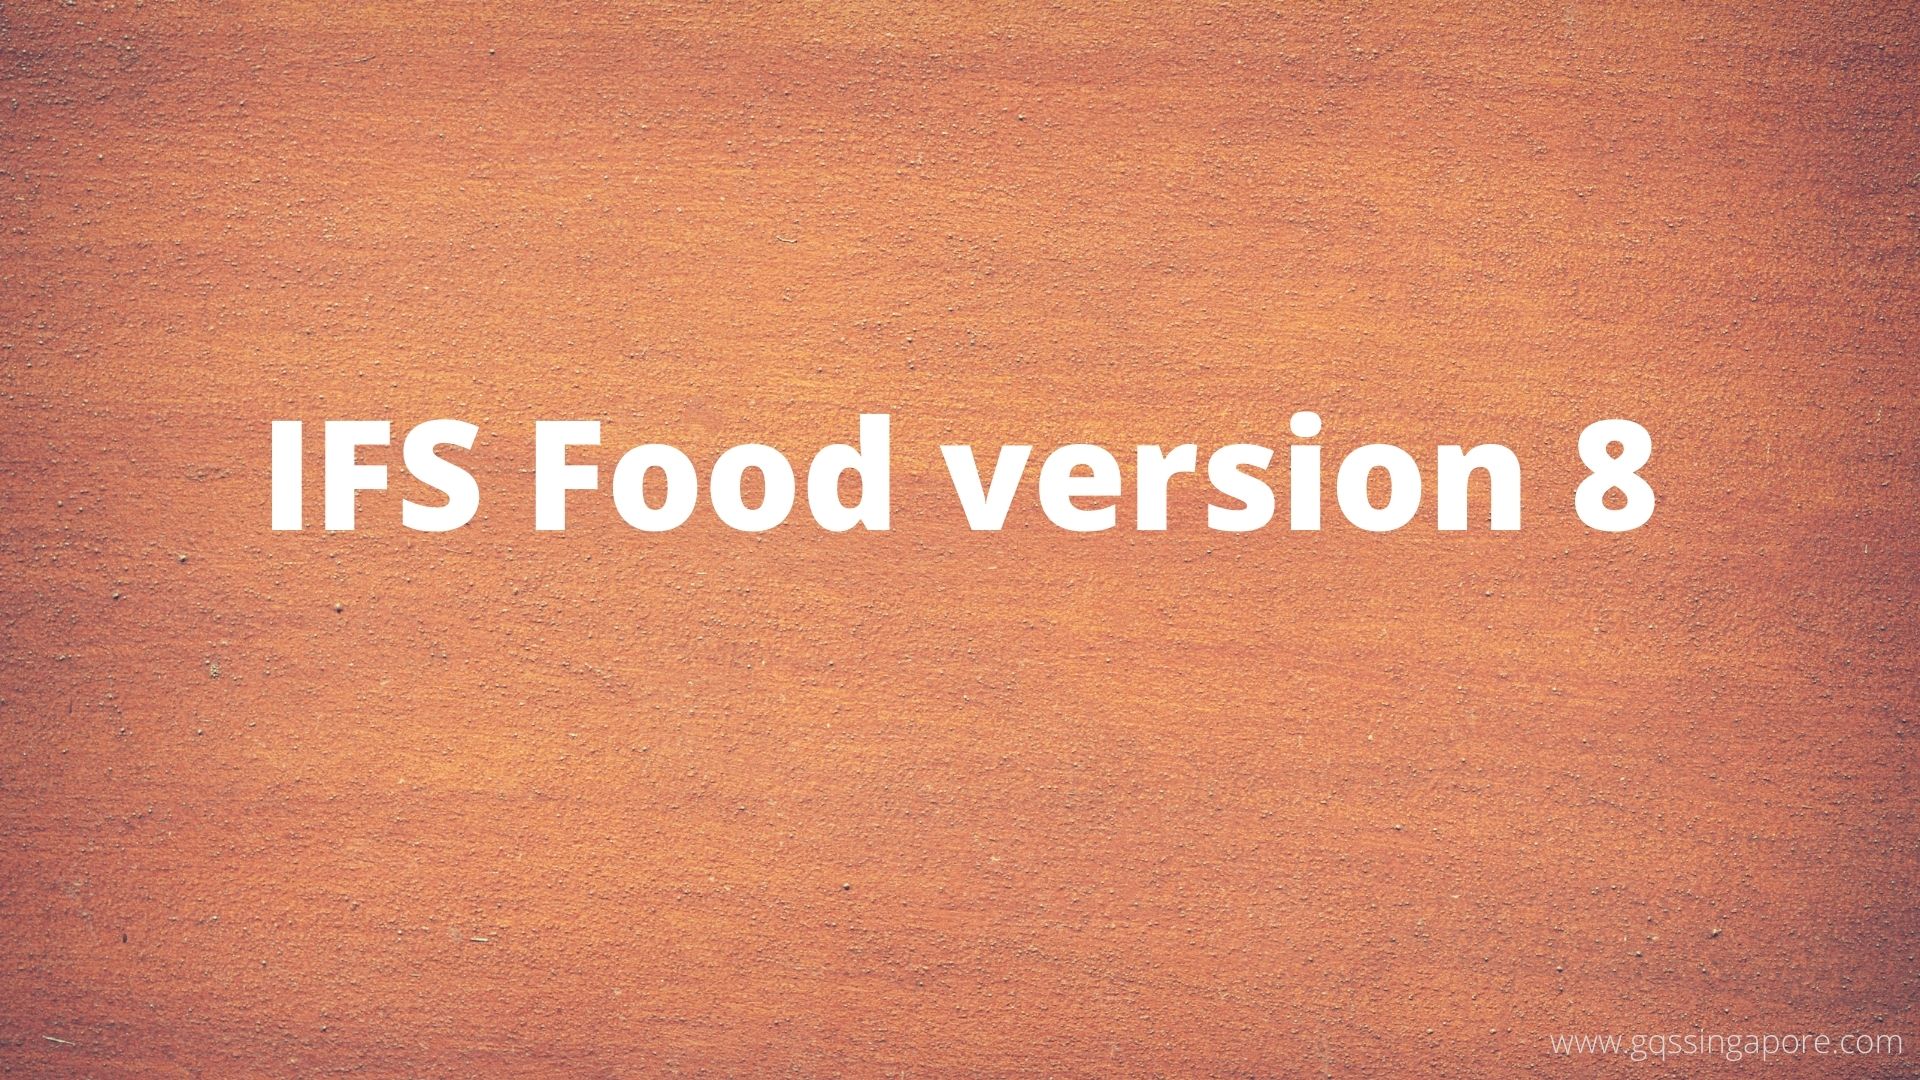 IFS Food version 8